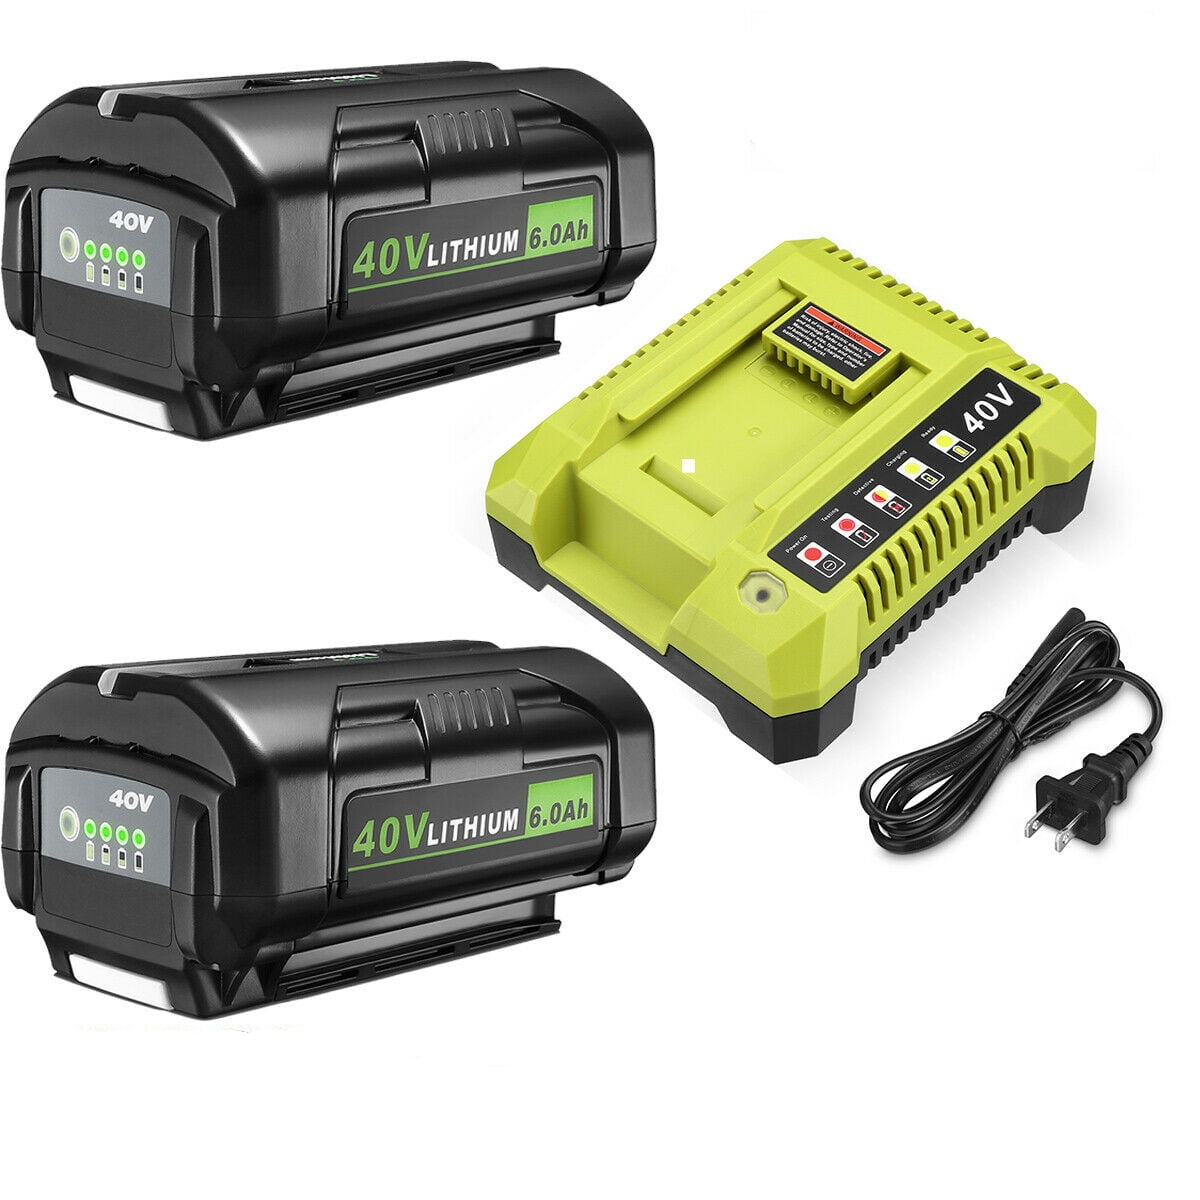 2-Pack 40V 6000mAh Lithium Battery + Battery Charger for Ryobi 40 Volt OP4040 OP4050A OP4026 OP4026A OP4030 OP4050 -